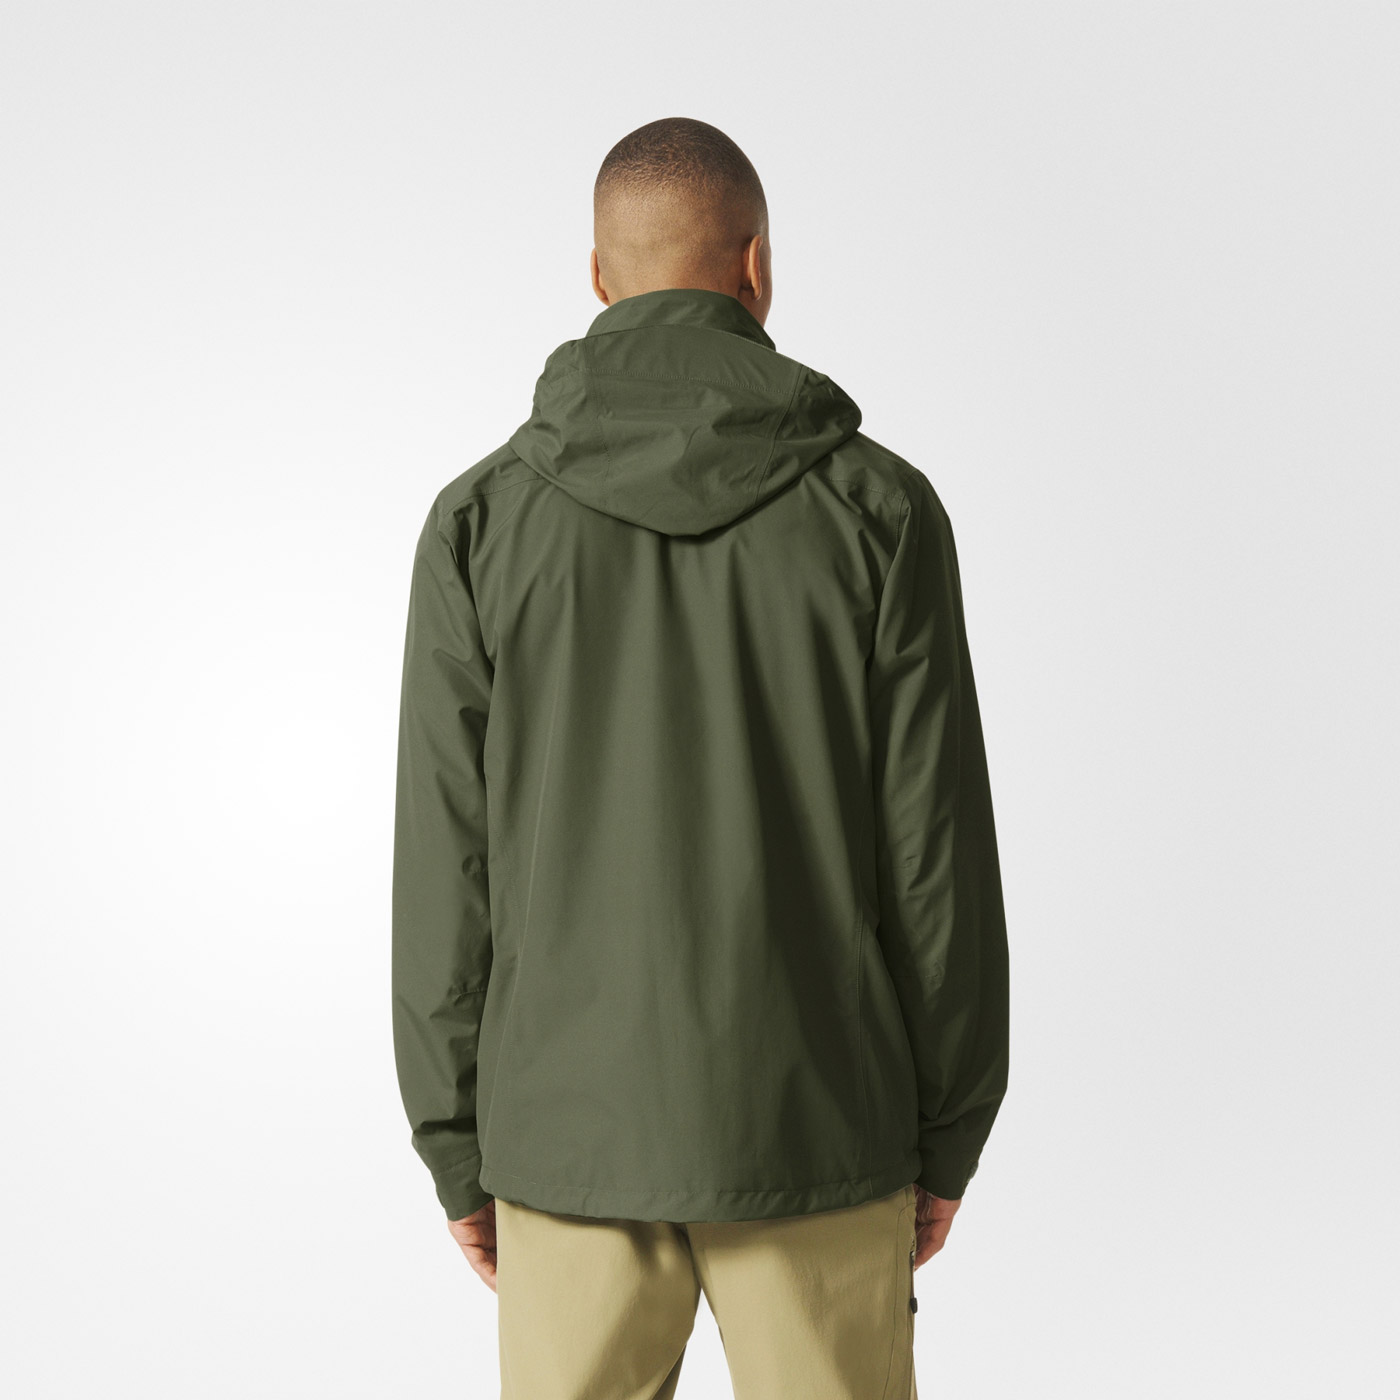 Men’s outdoor jacket